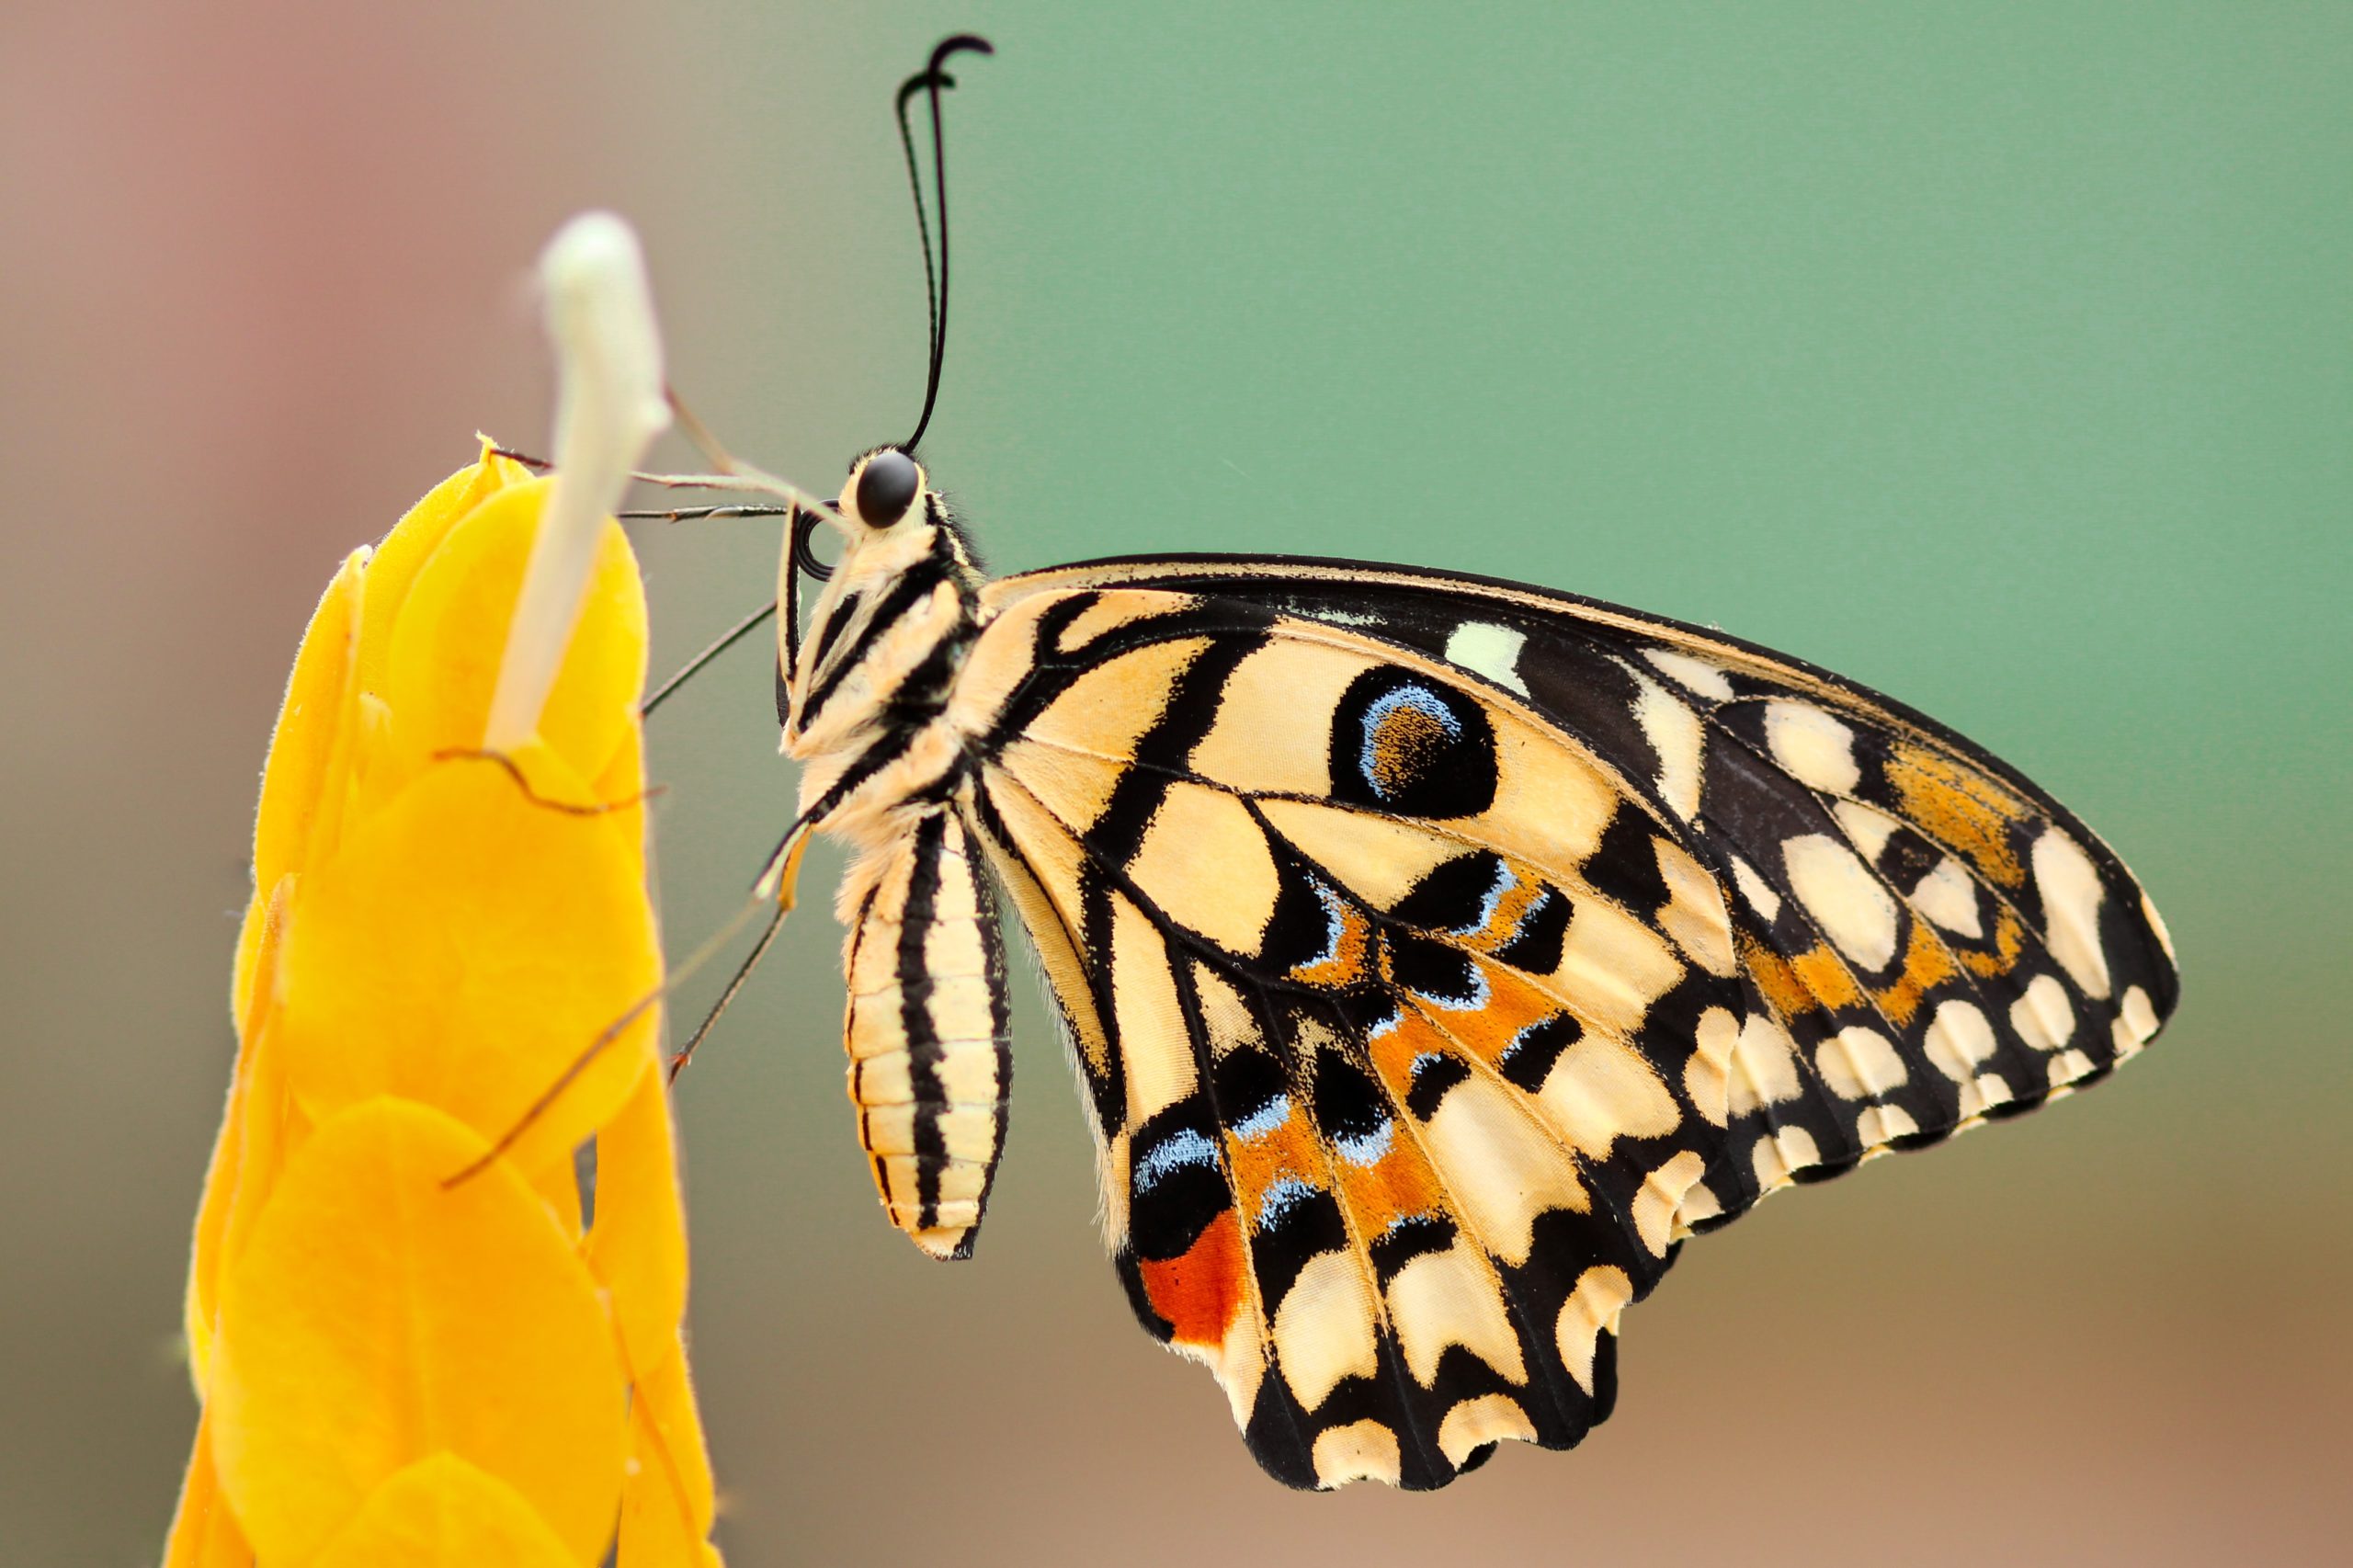 Mariposas migratorias tienen mayor diversidad genética: estudio